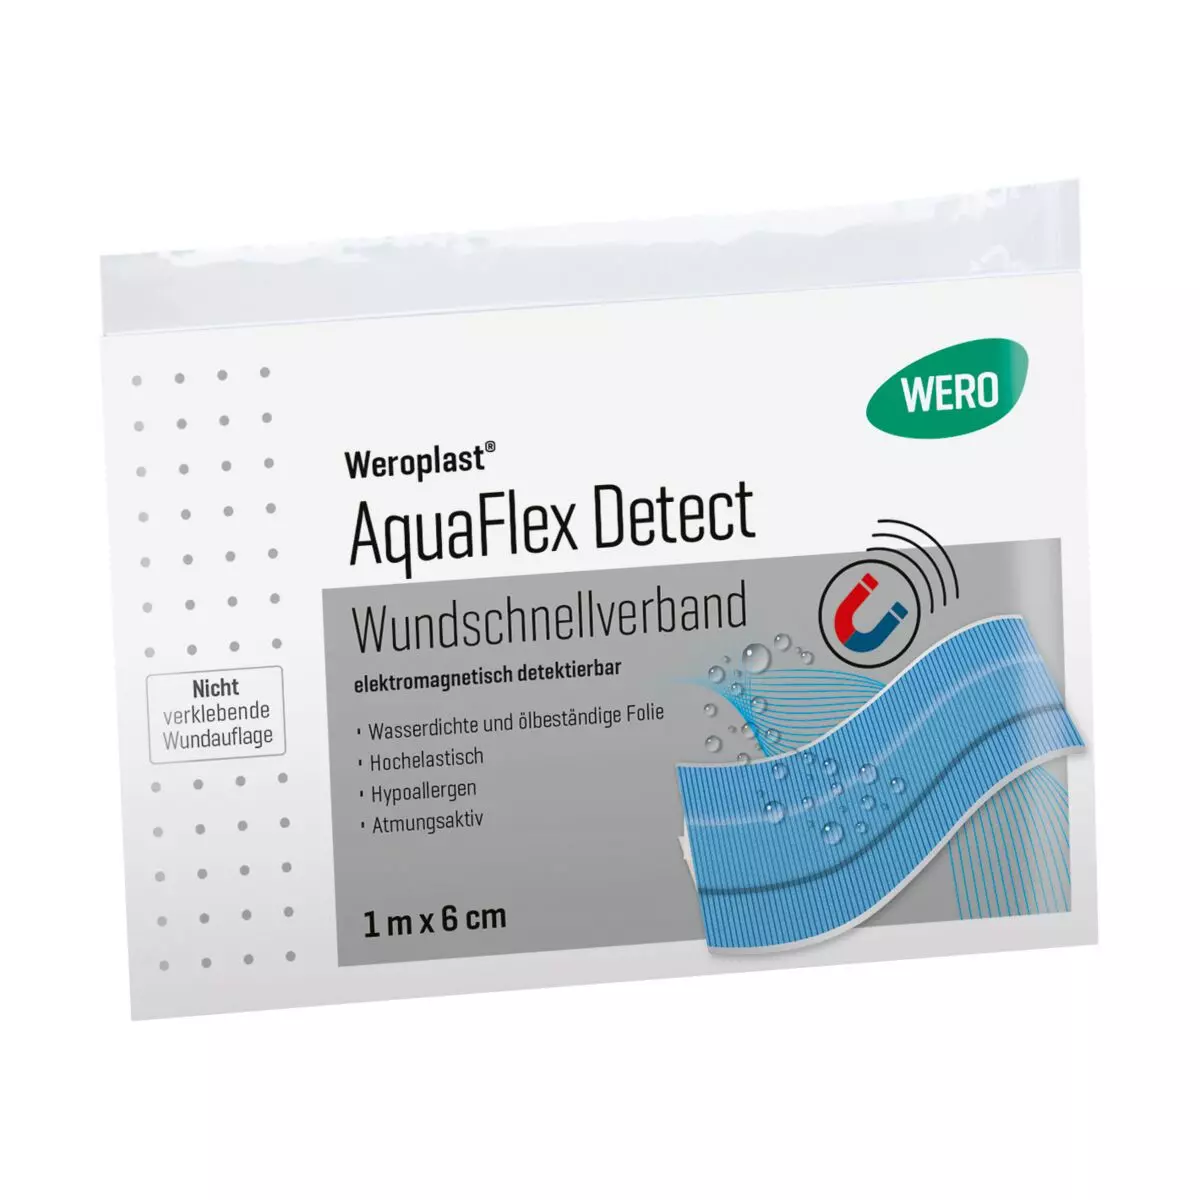 Weroplast® AquaFlex Detect Wundschnellverband - 6 cm, 1 m